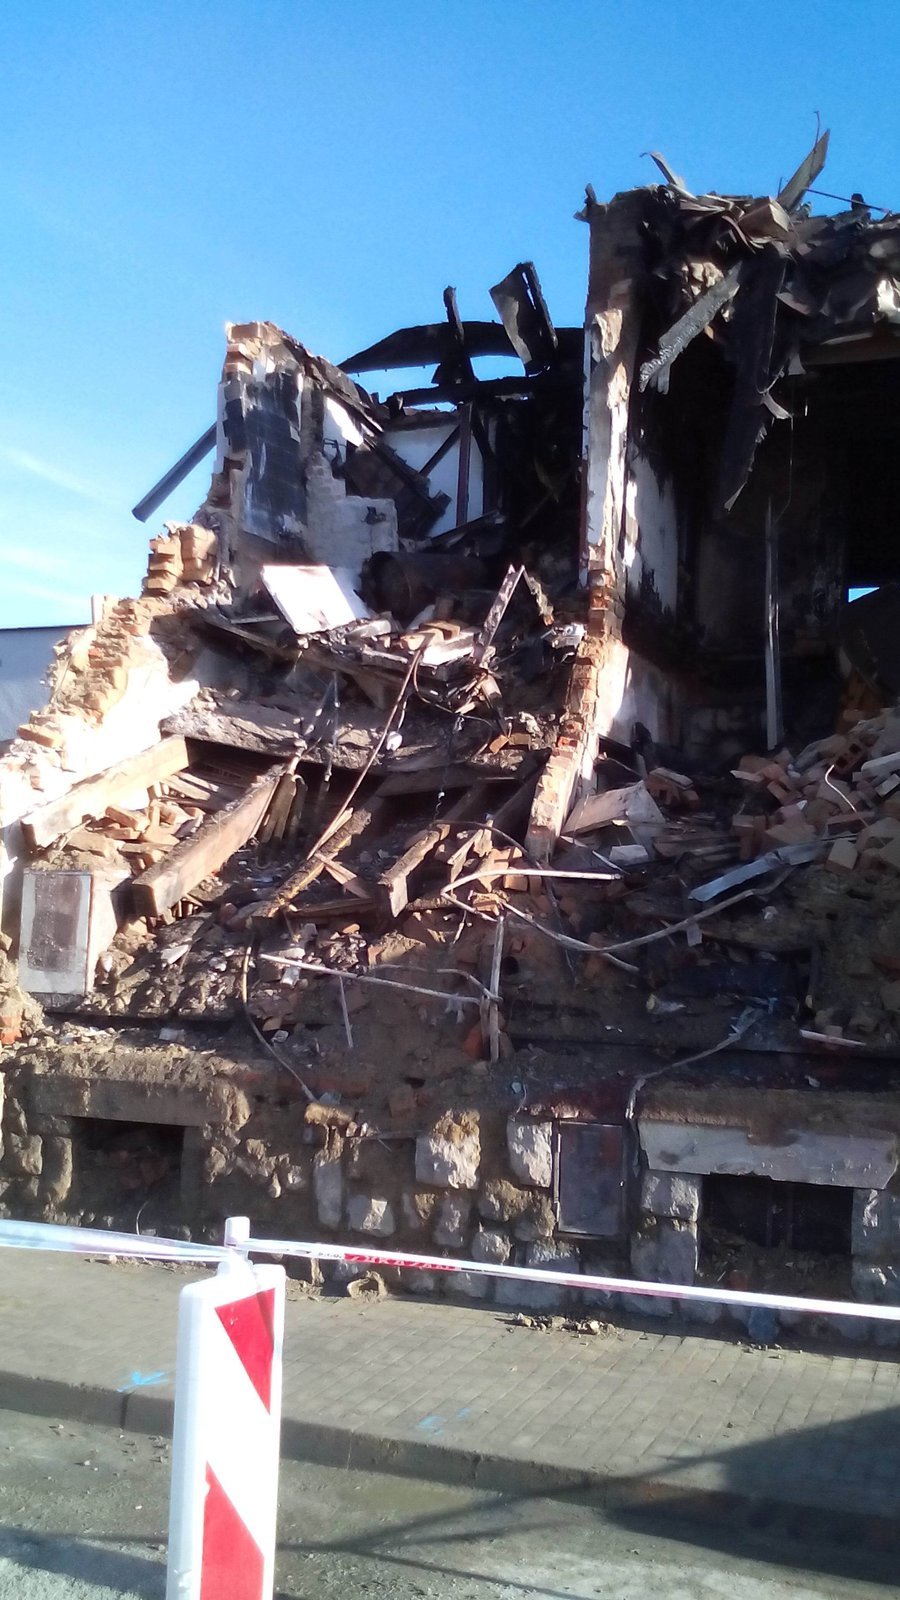 Výbuch a požár rodinný dům v Českých Budějovicích zcela zdemoloval.